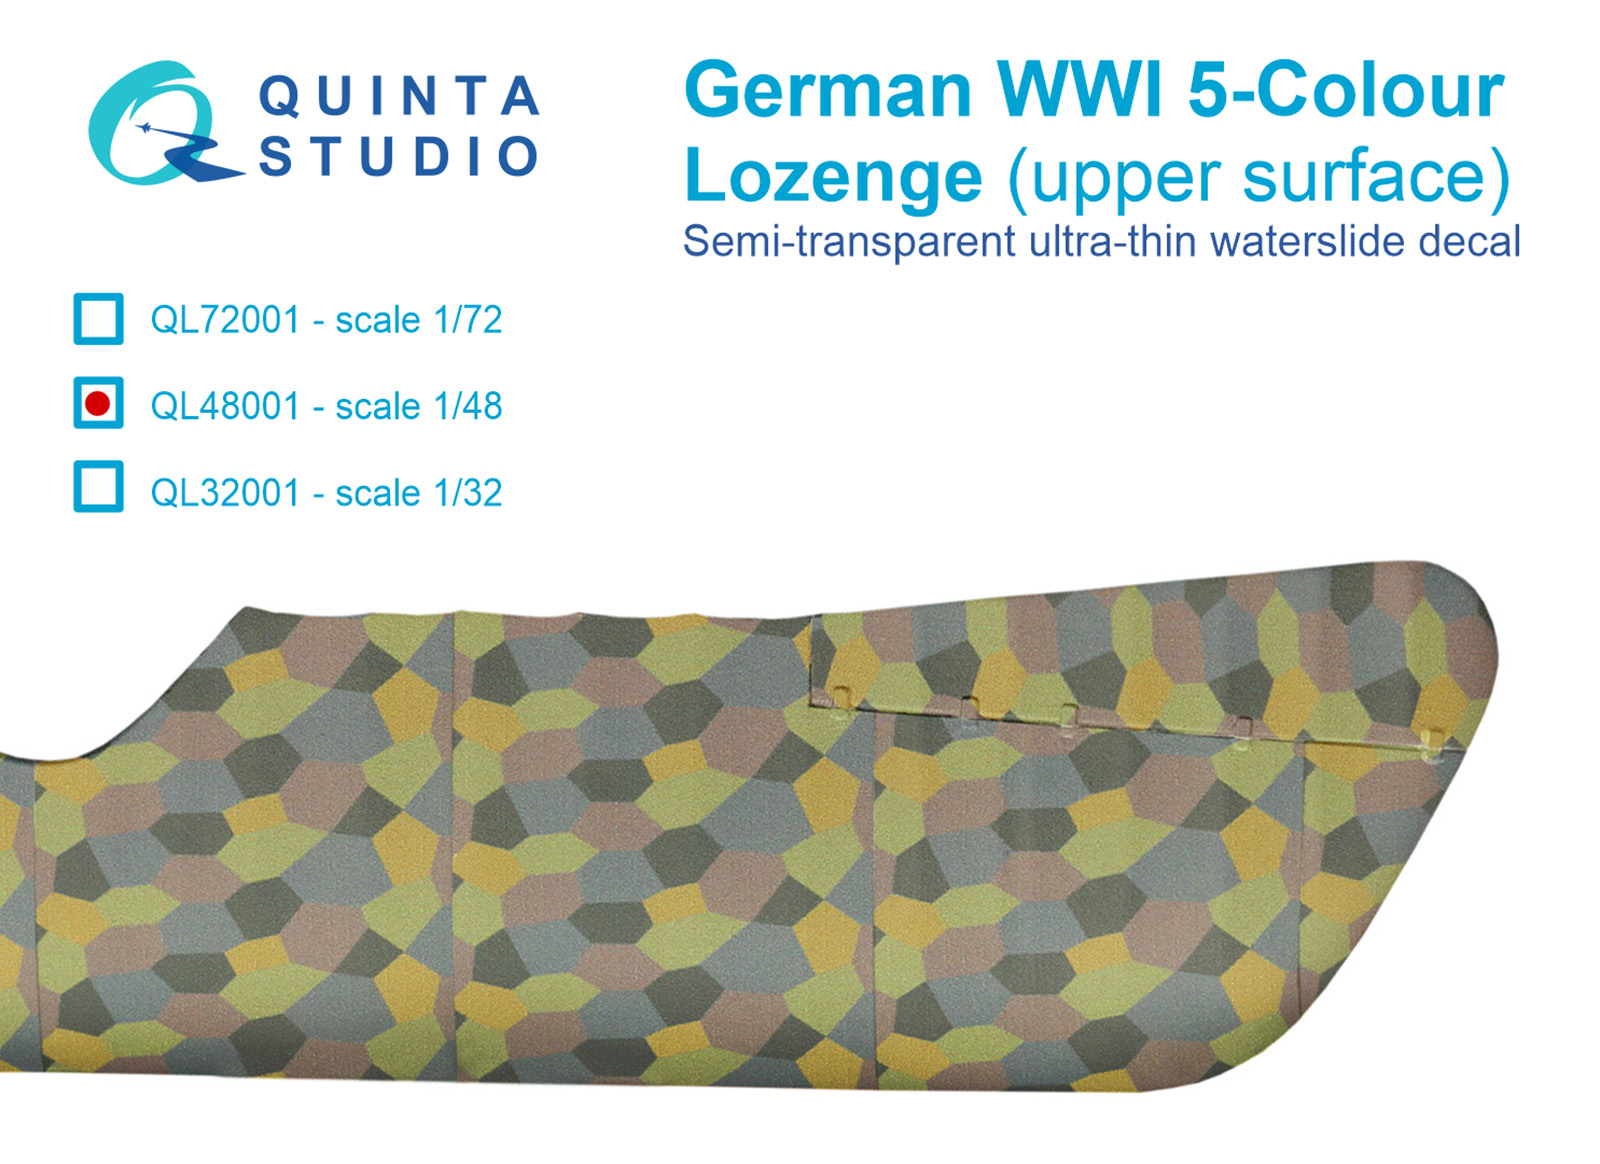 German WWI 5-Colour Lozenge (upper surface)